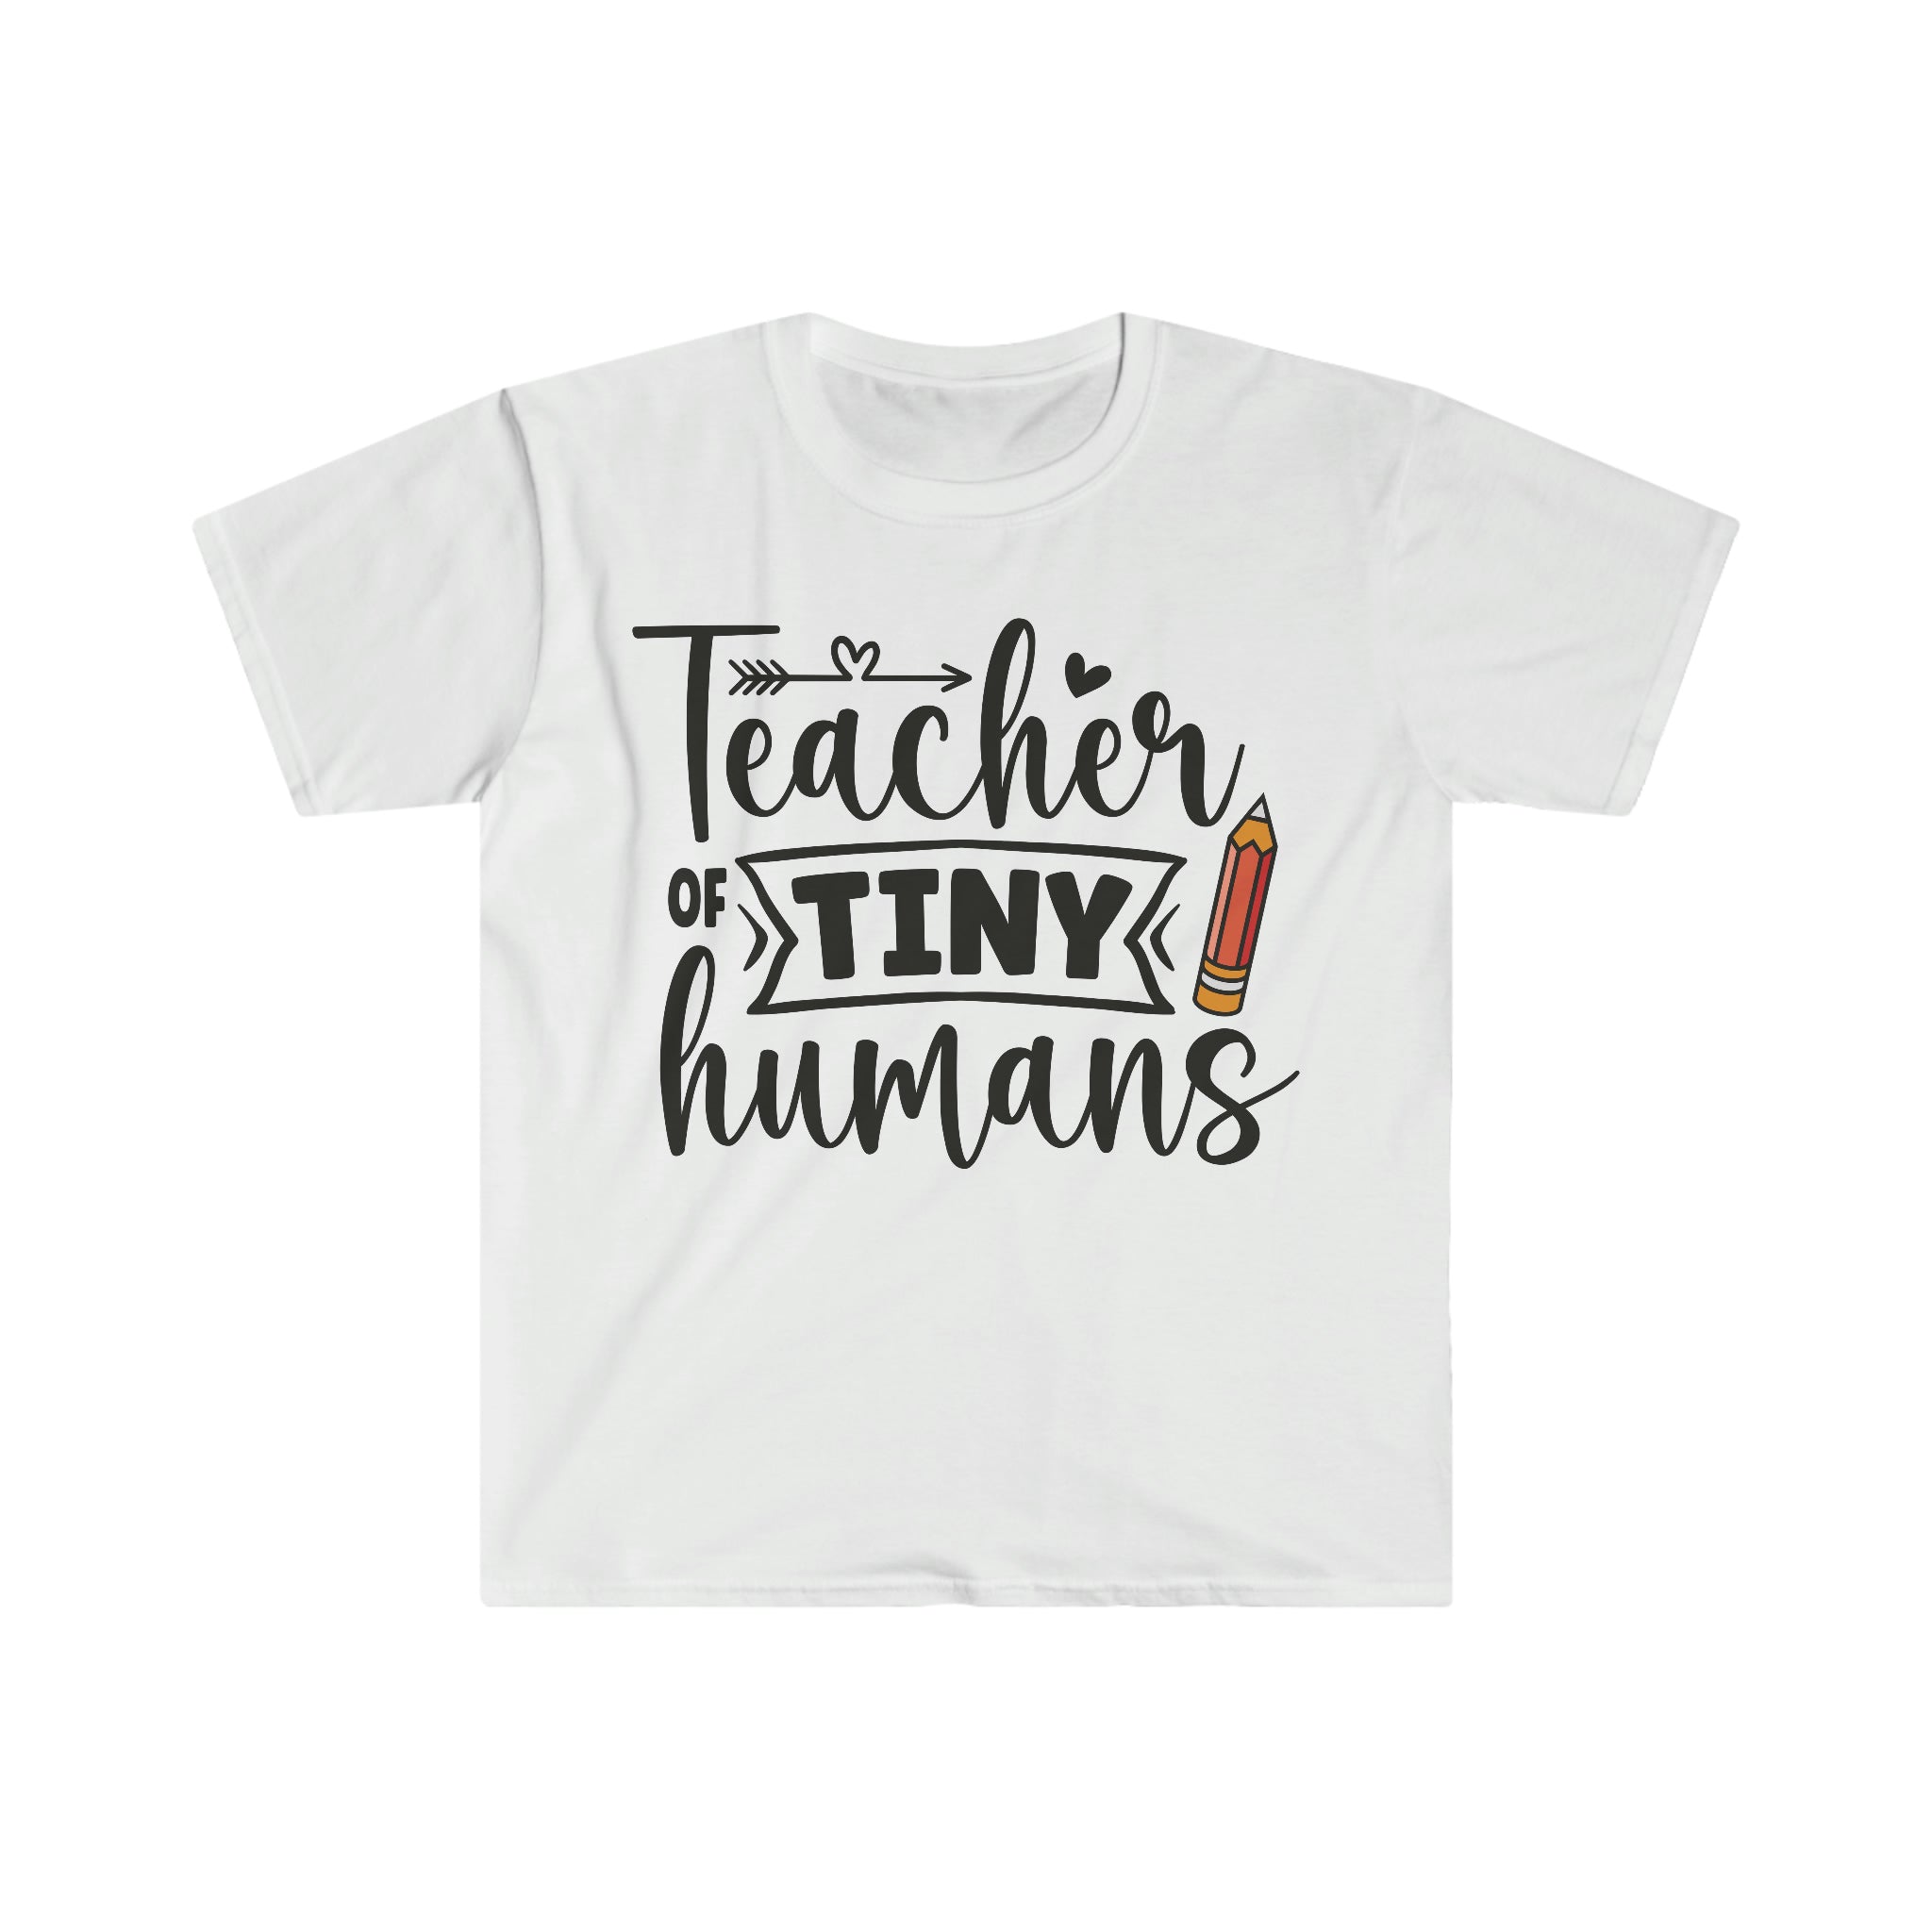 A Teacher of Tiny Humans T-Shirt.